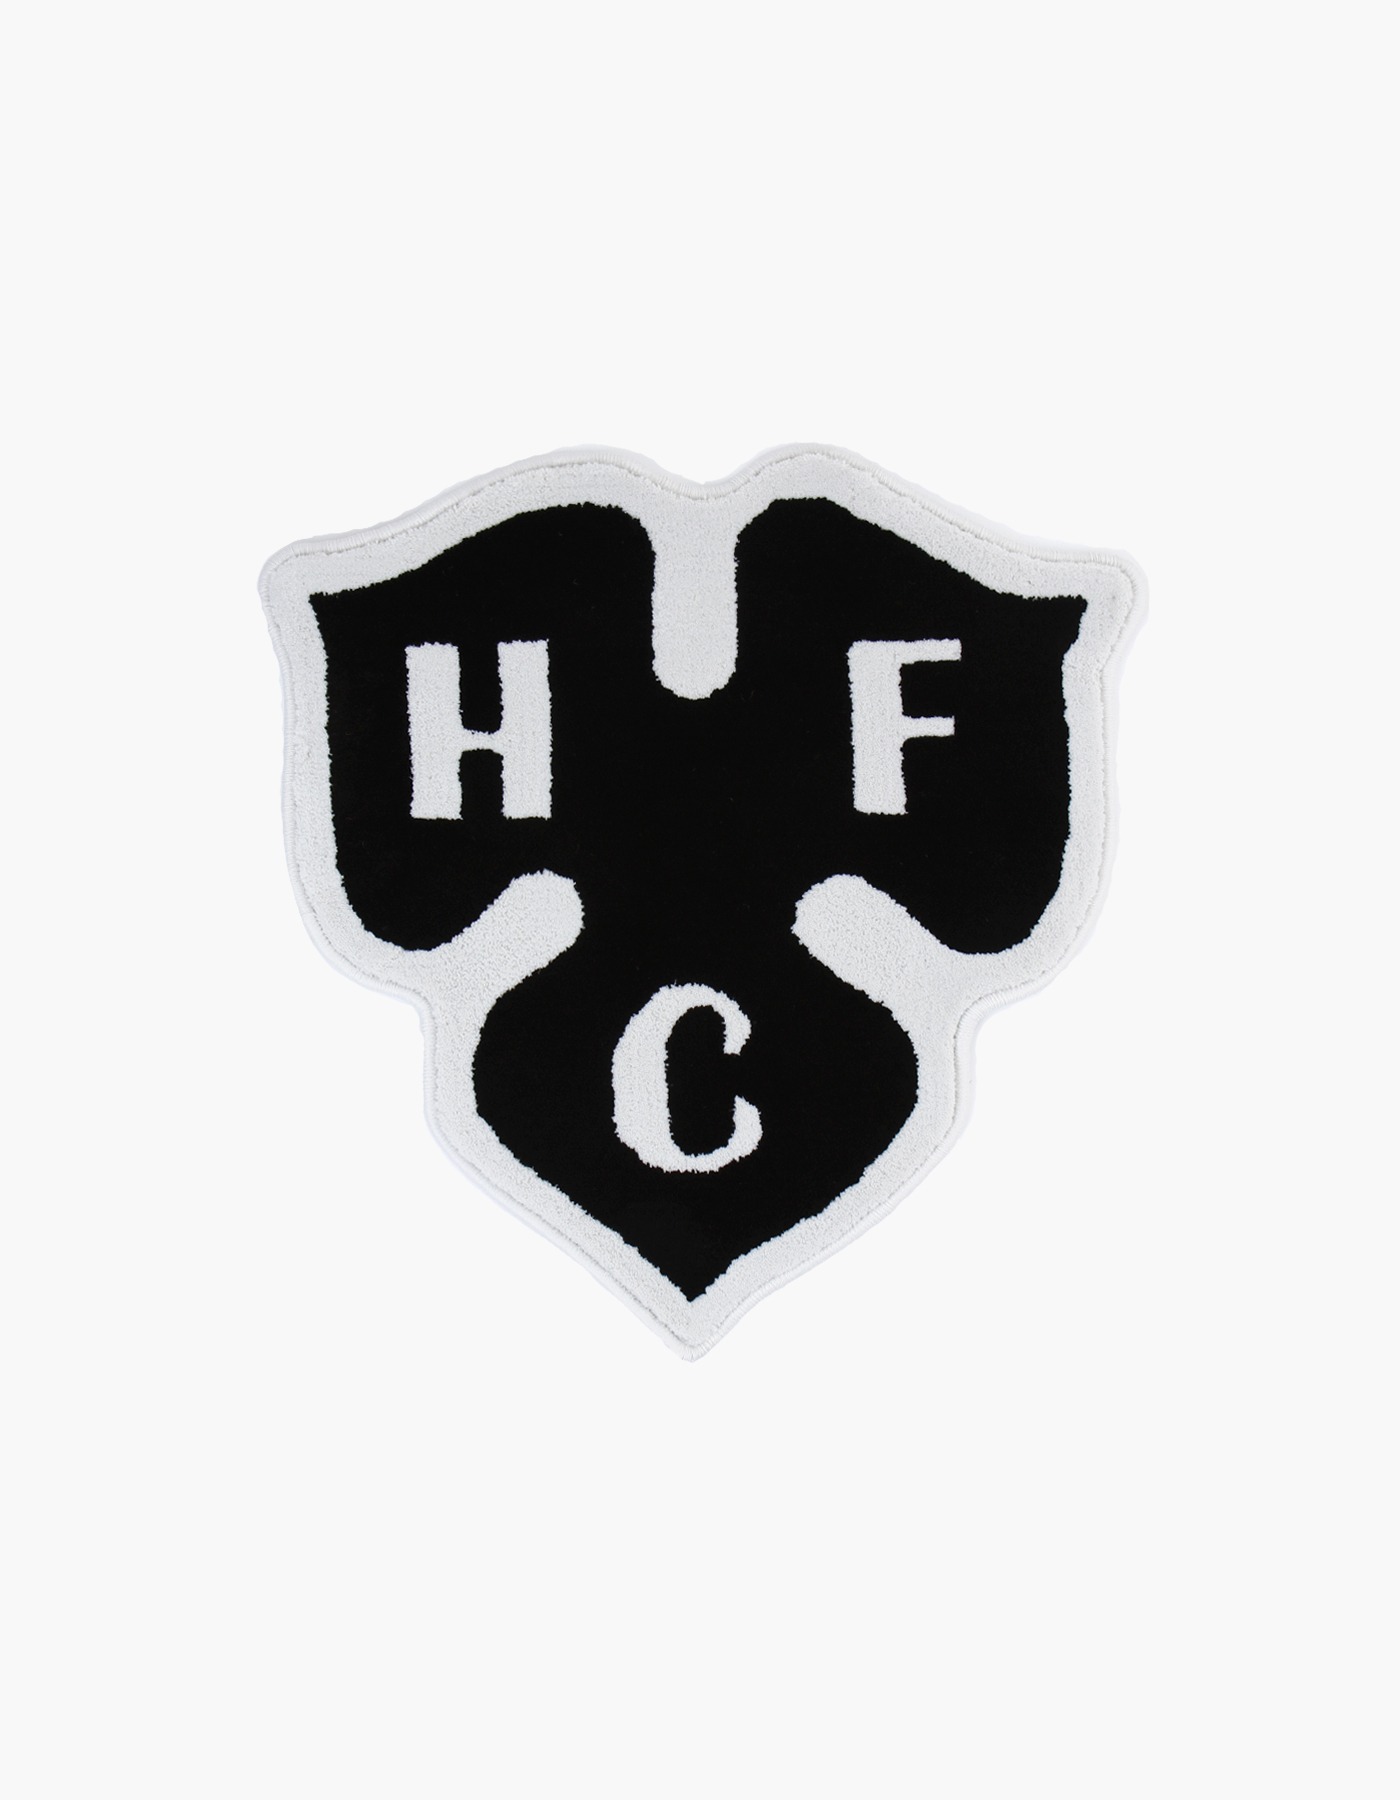 HFC CLOVER RUG / BLACK-WHITE